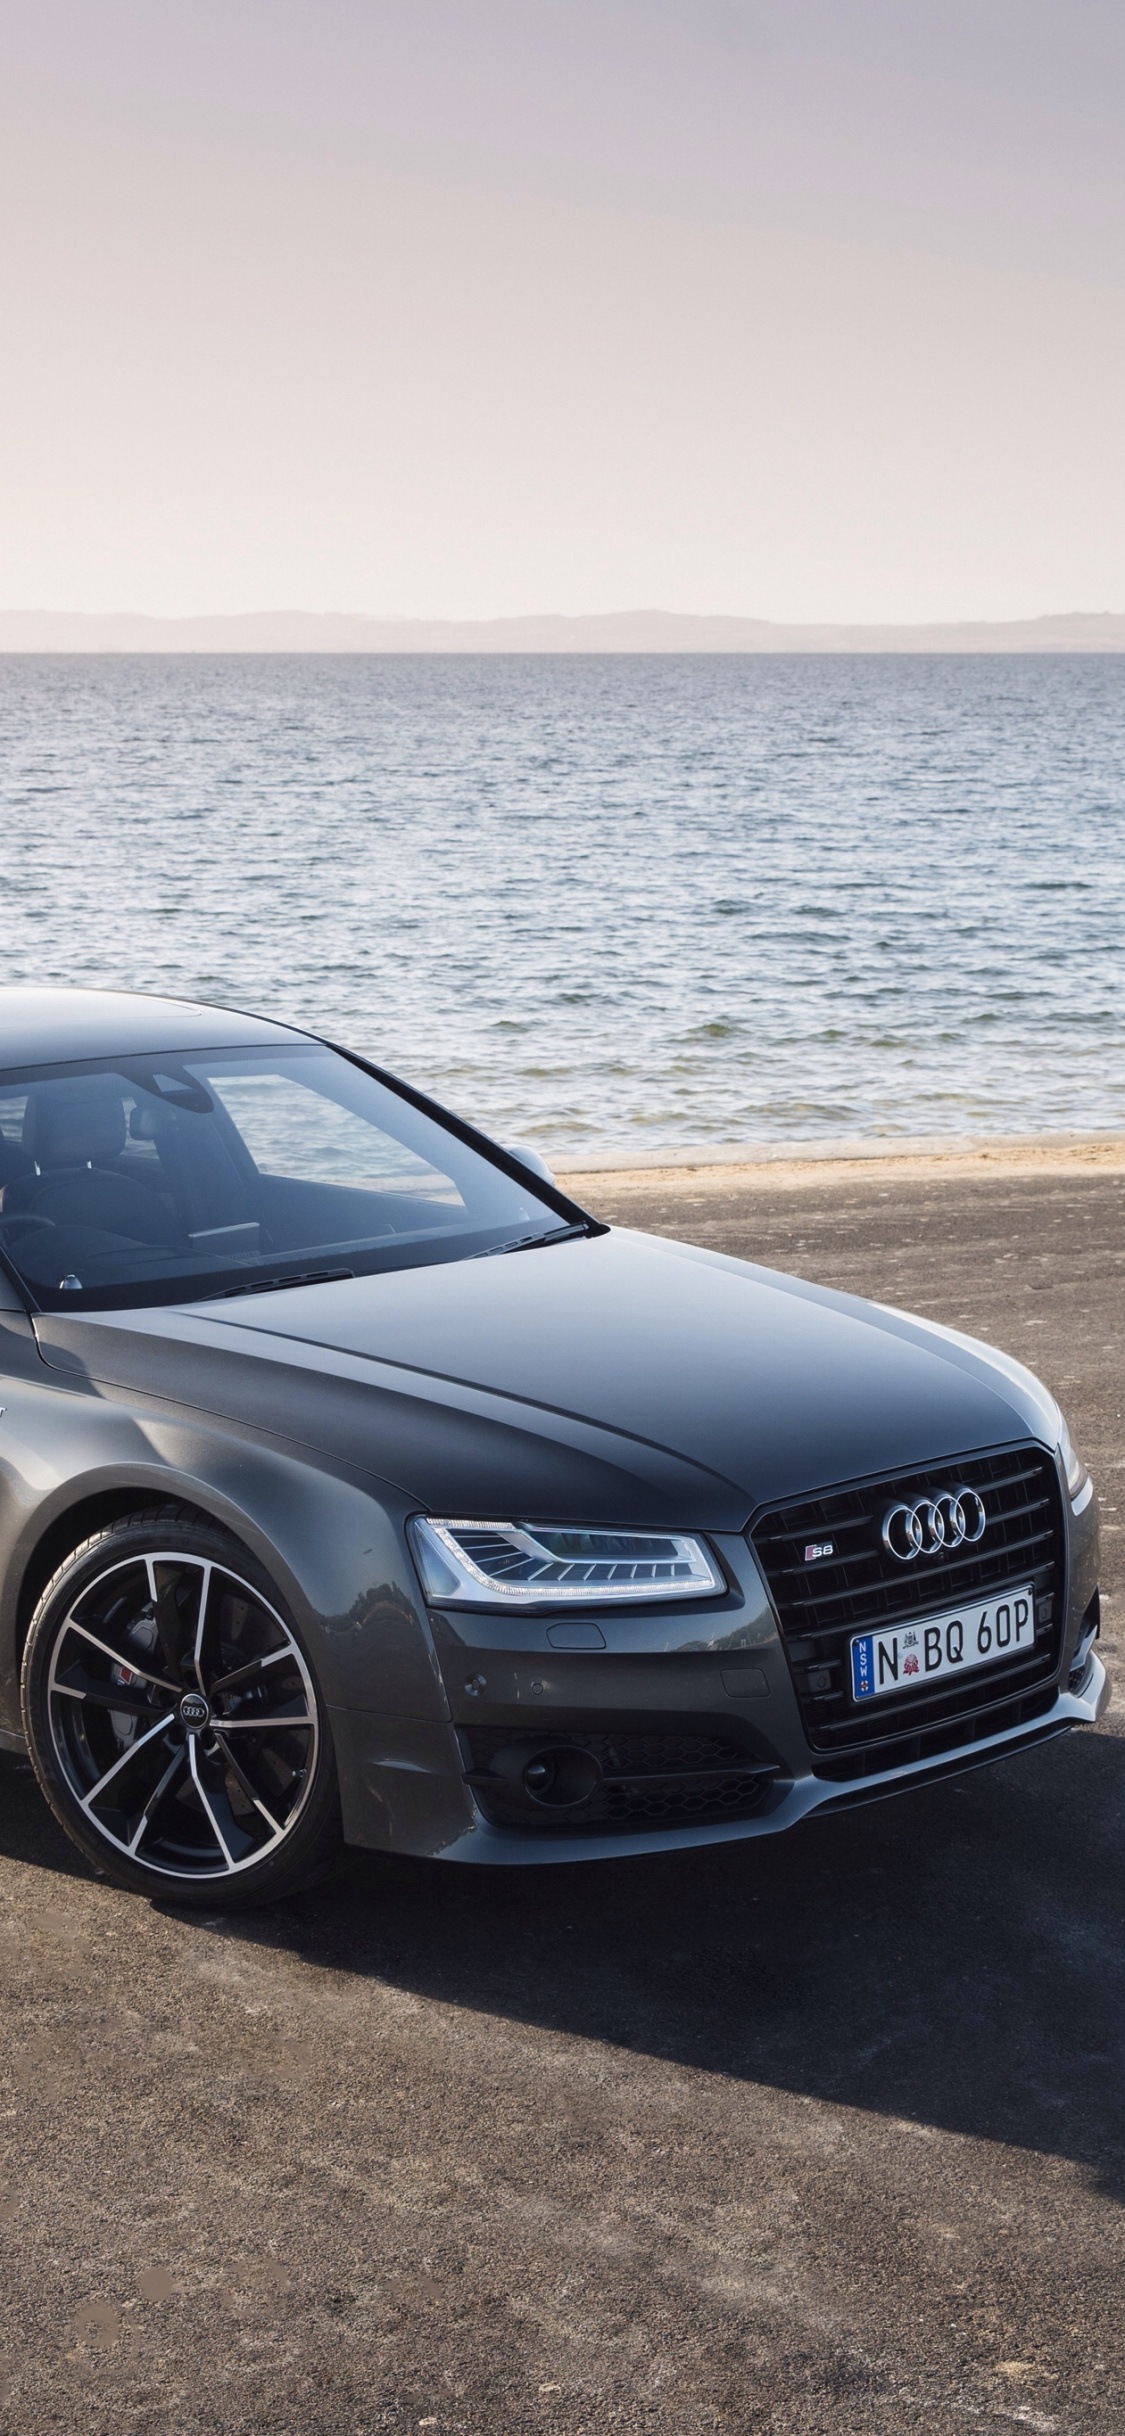 Audi Noir a 4 Sur la Plage Pendant la Journée. Wallpaper in 1125x2436 Resolution